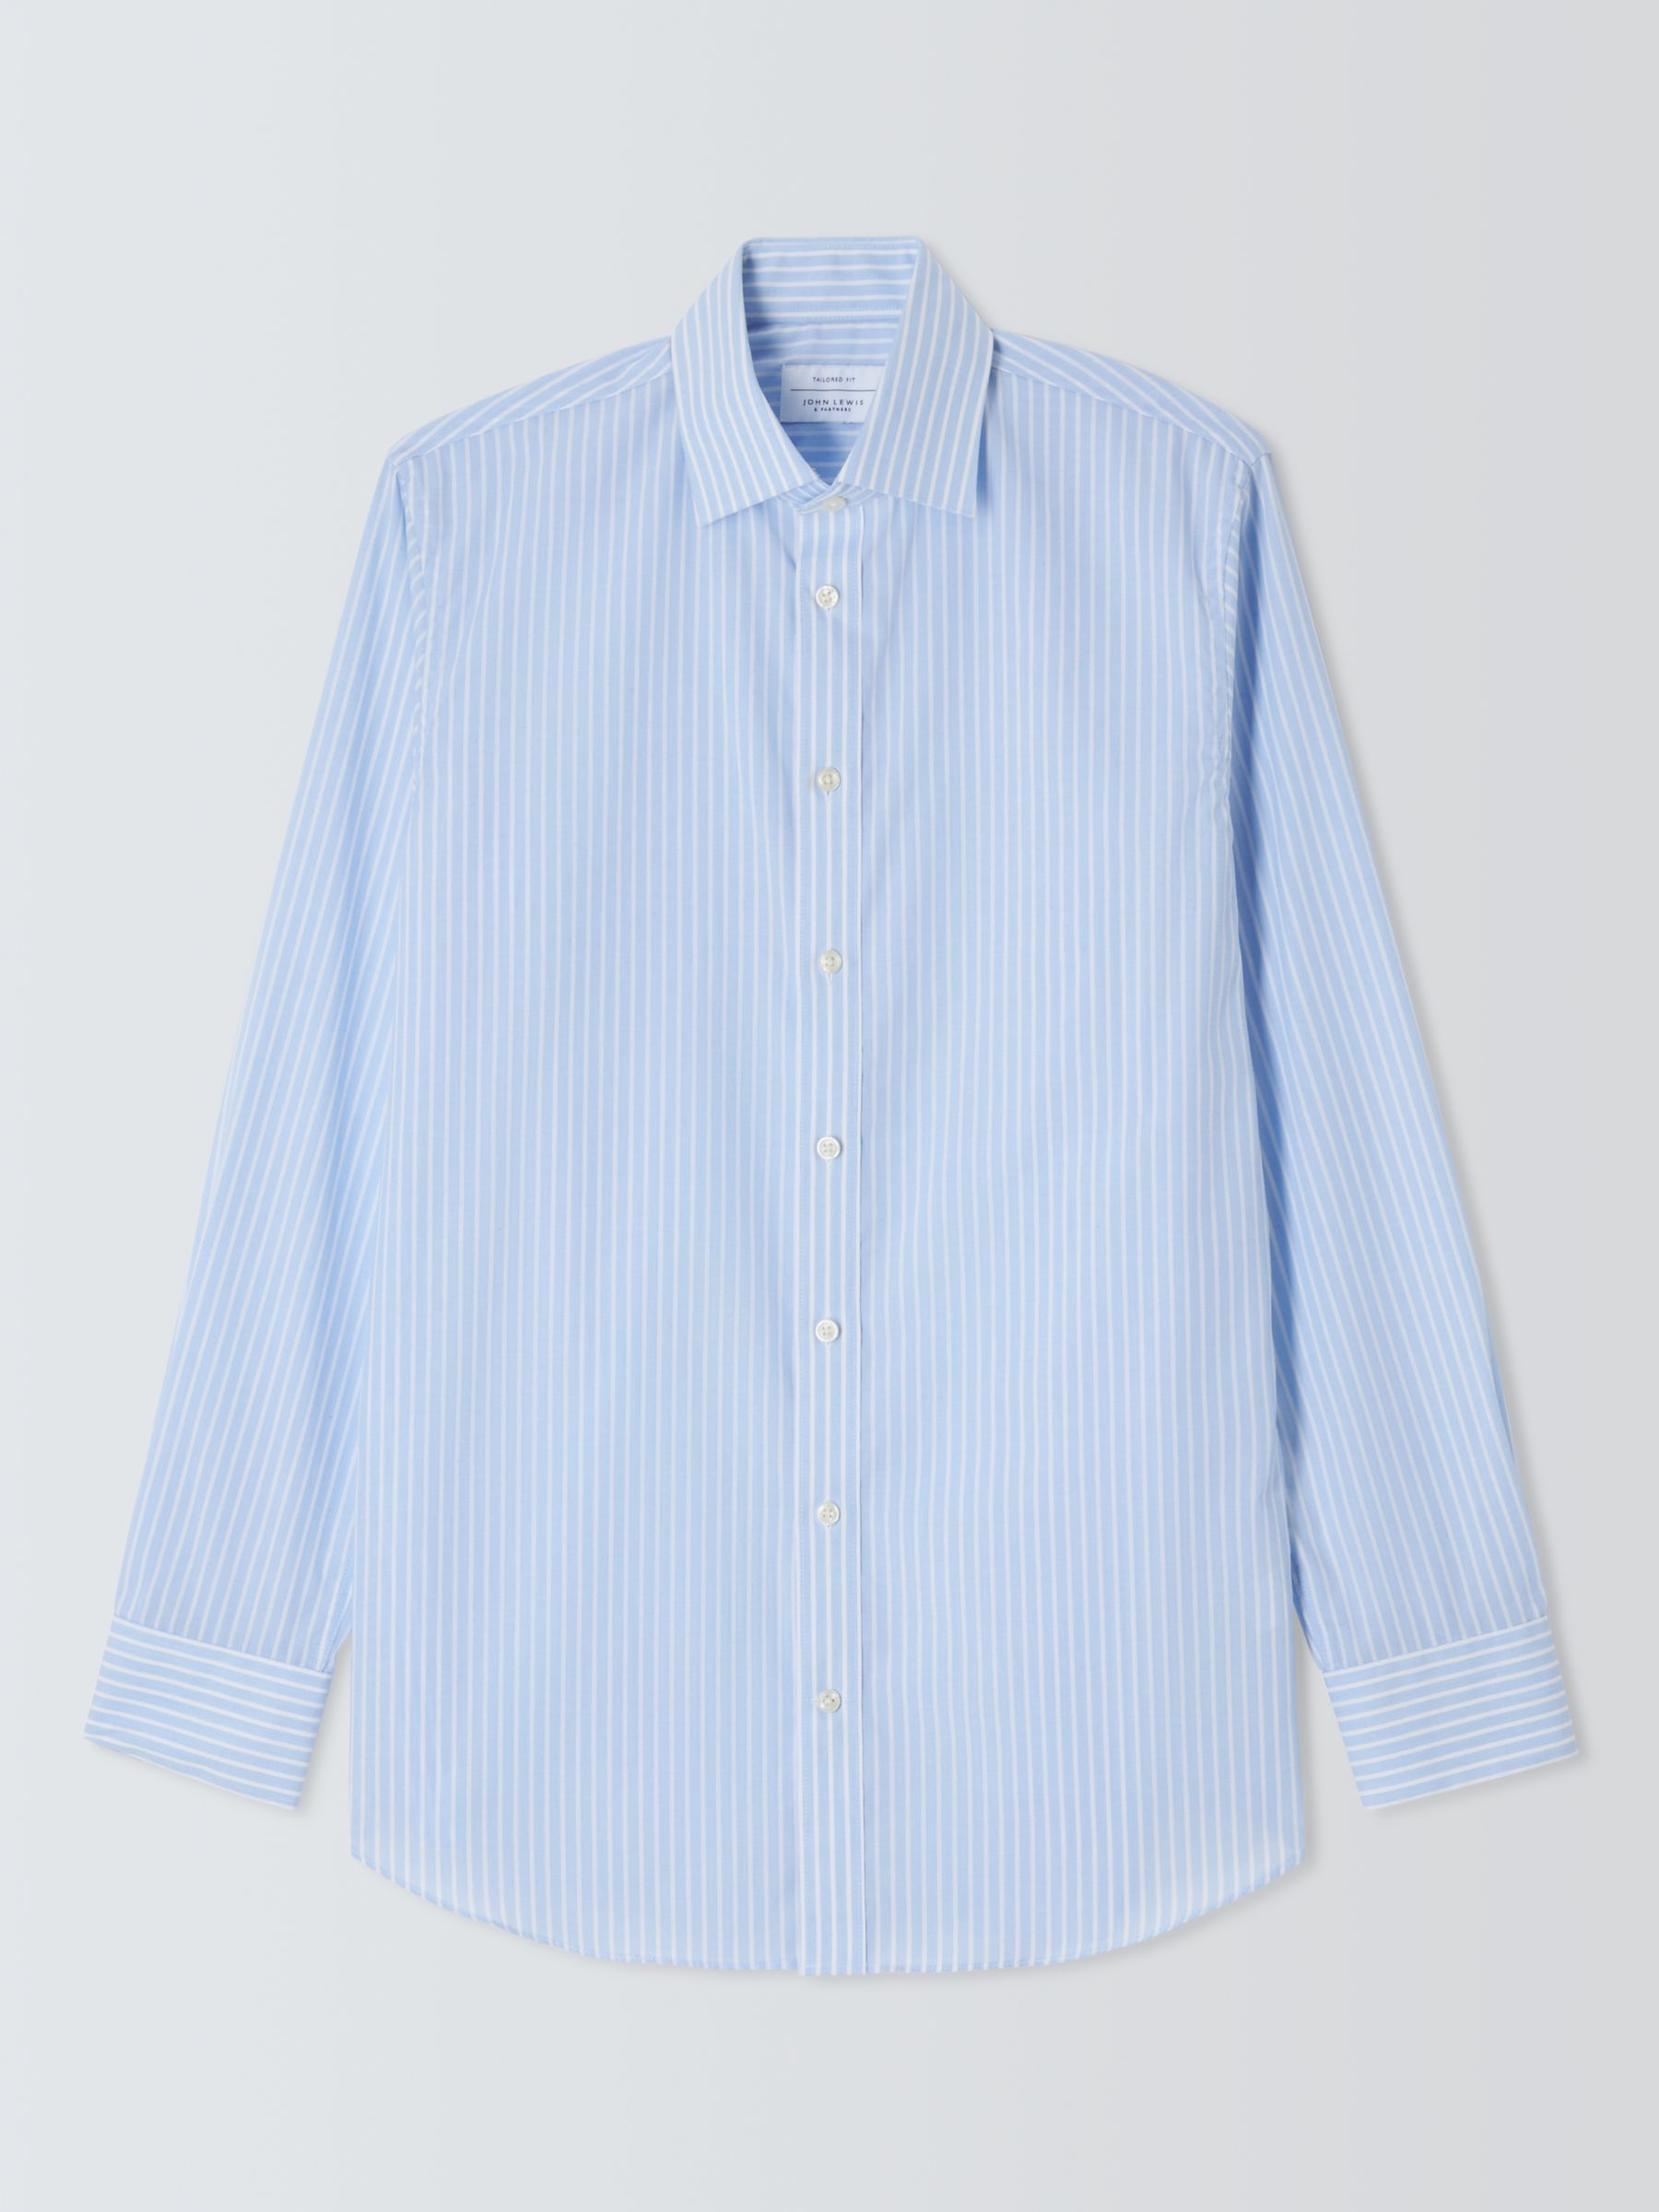 John Lewis Stripe Tailored Fit Shirt, Light Blue at John Lewis & Partners